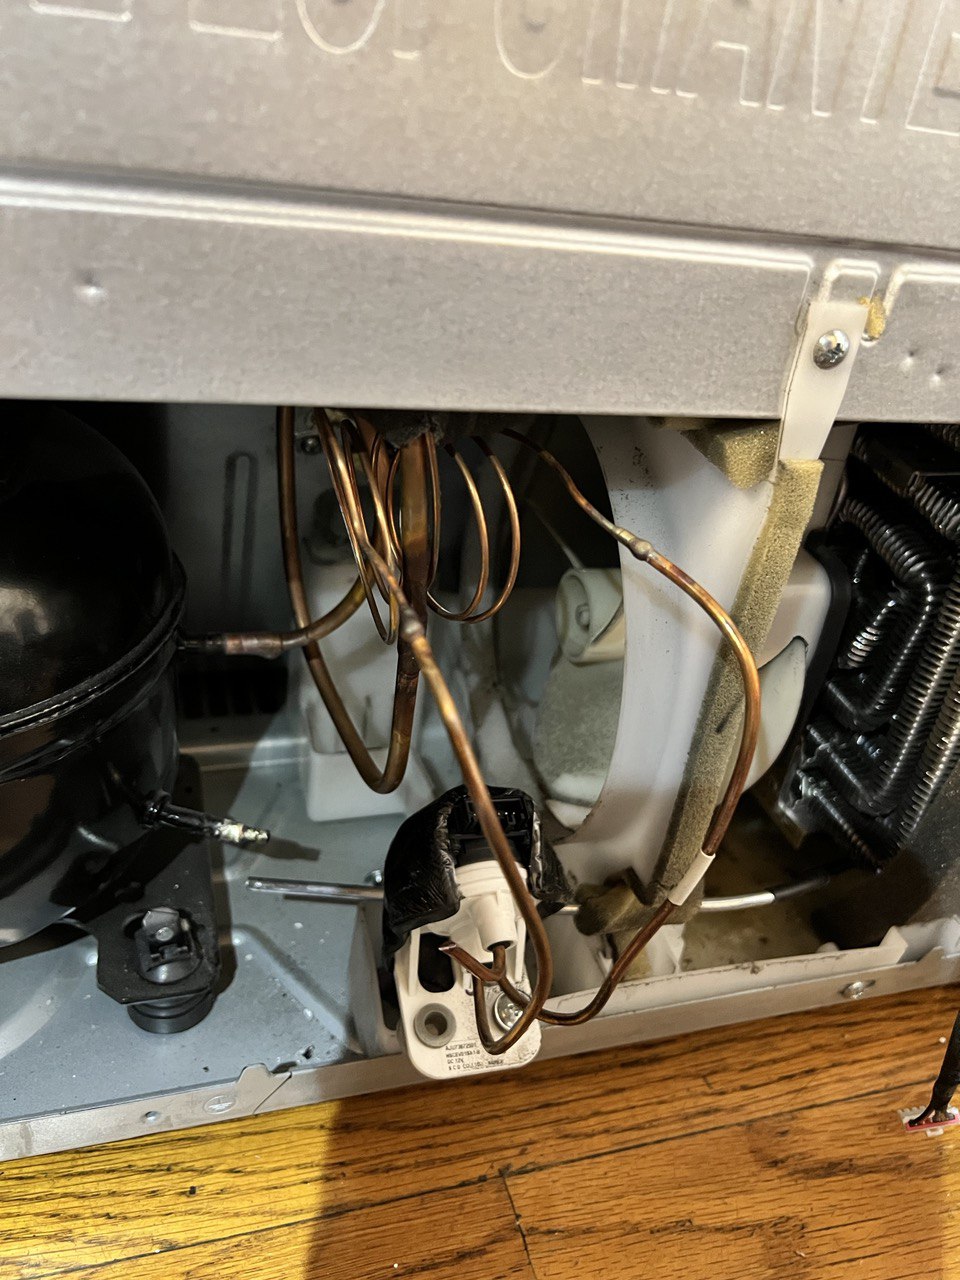 Fridge LG Repair Refrigerator Repair